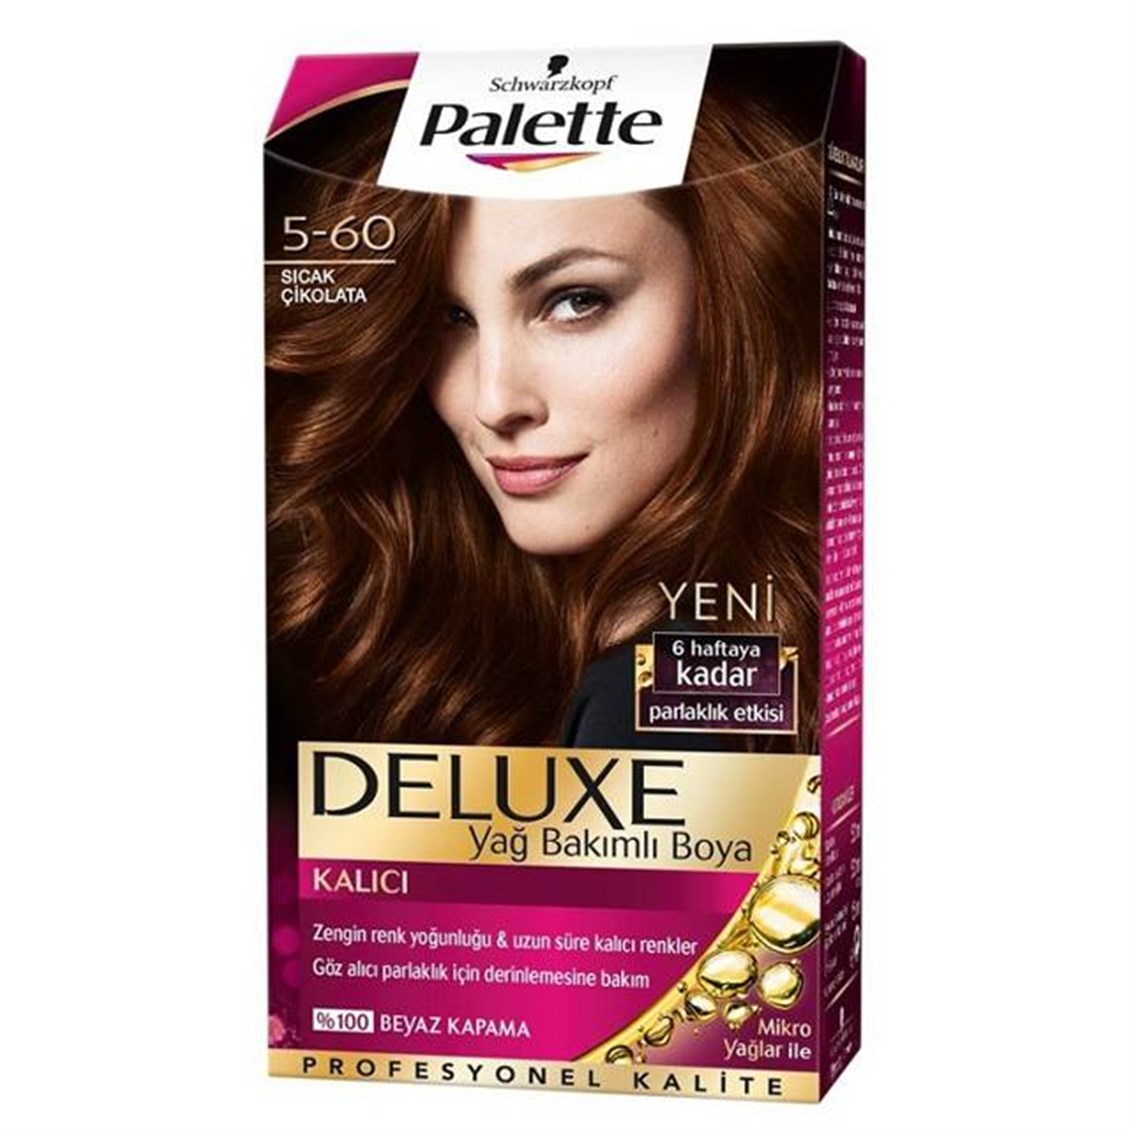 Palette Deluxe Sıcak Çikolata 5-60 Saç Boyası - Onur Market